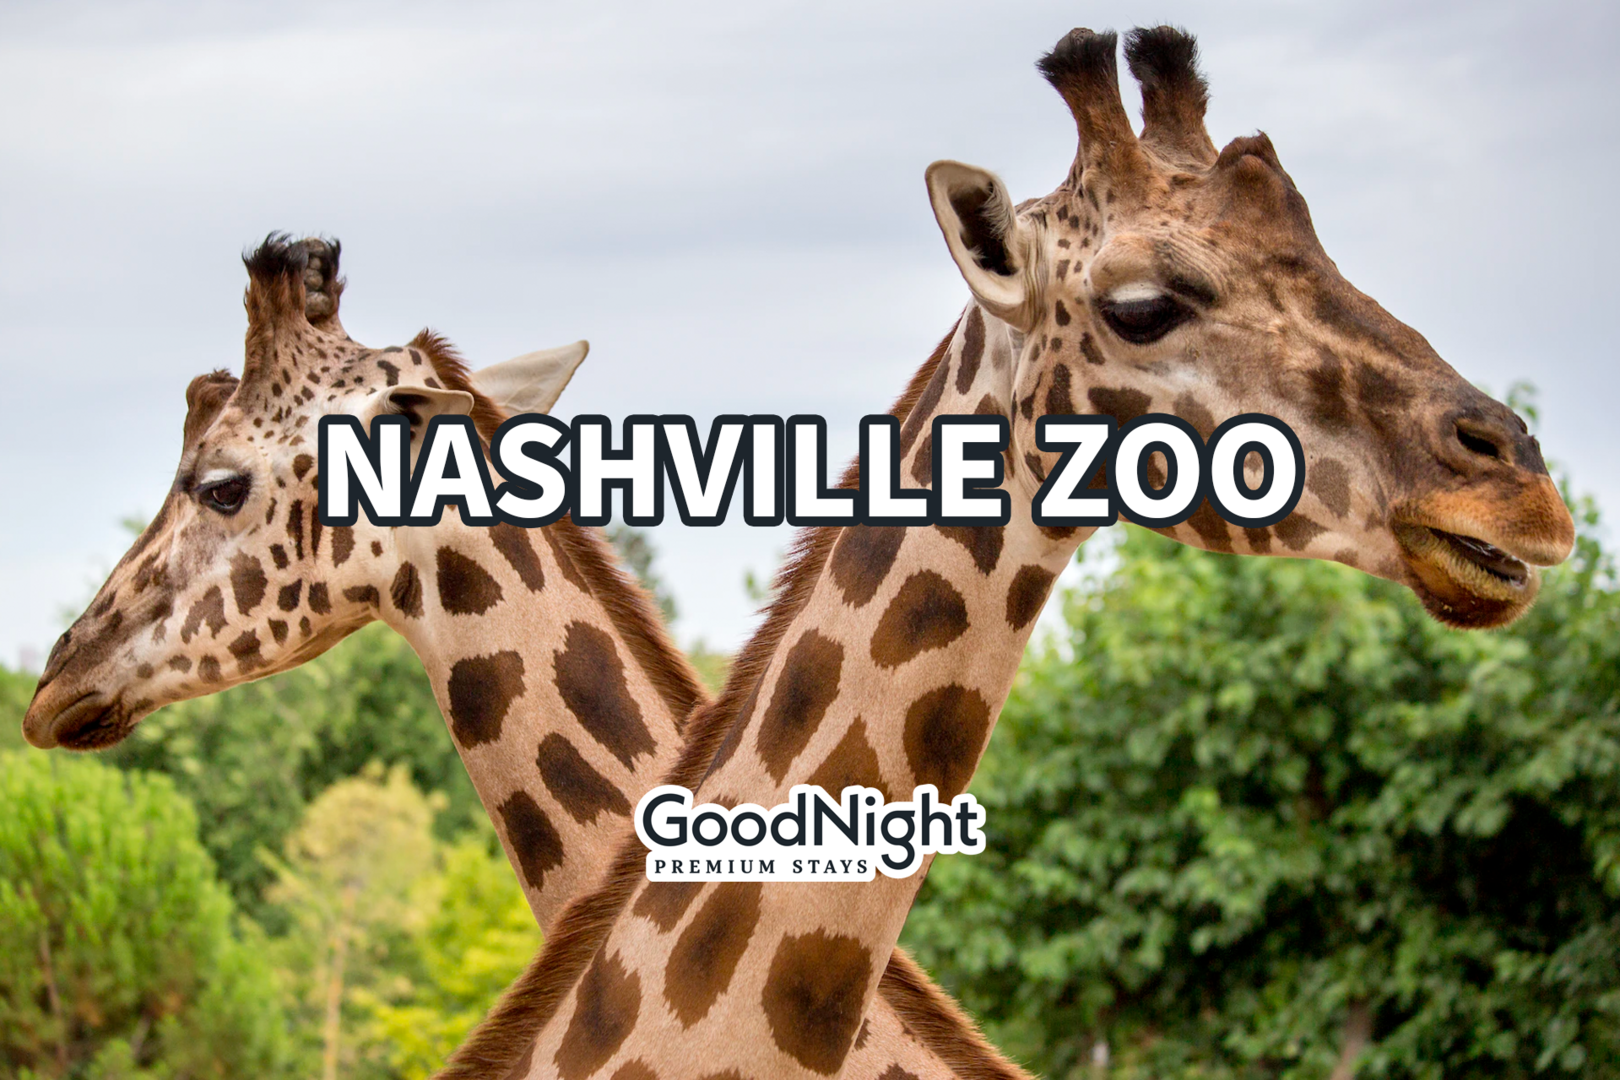 8 mins: Nashville Zoo